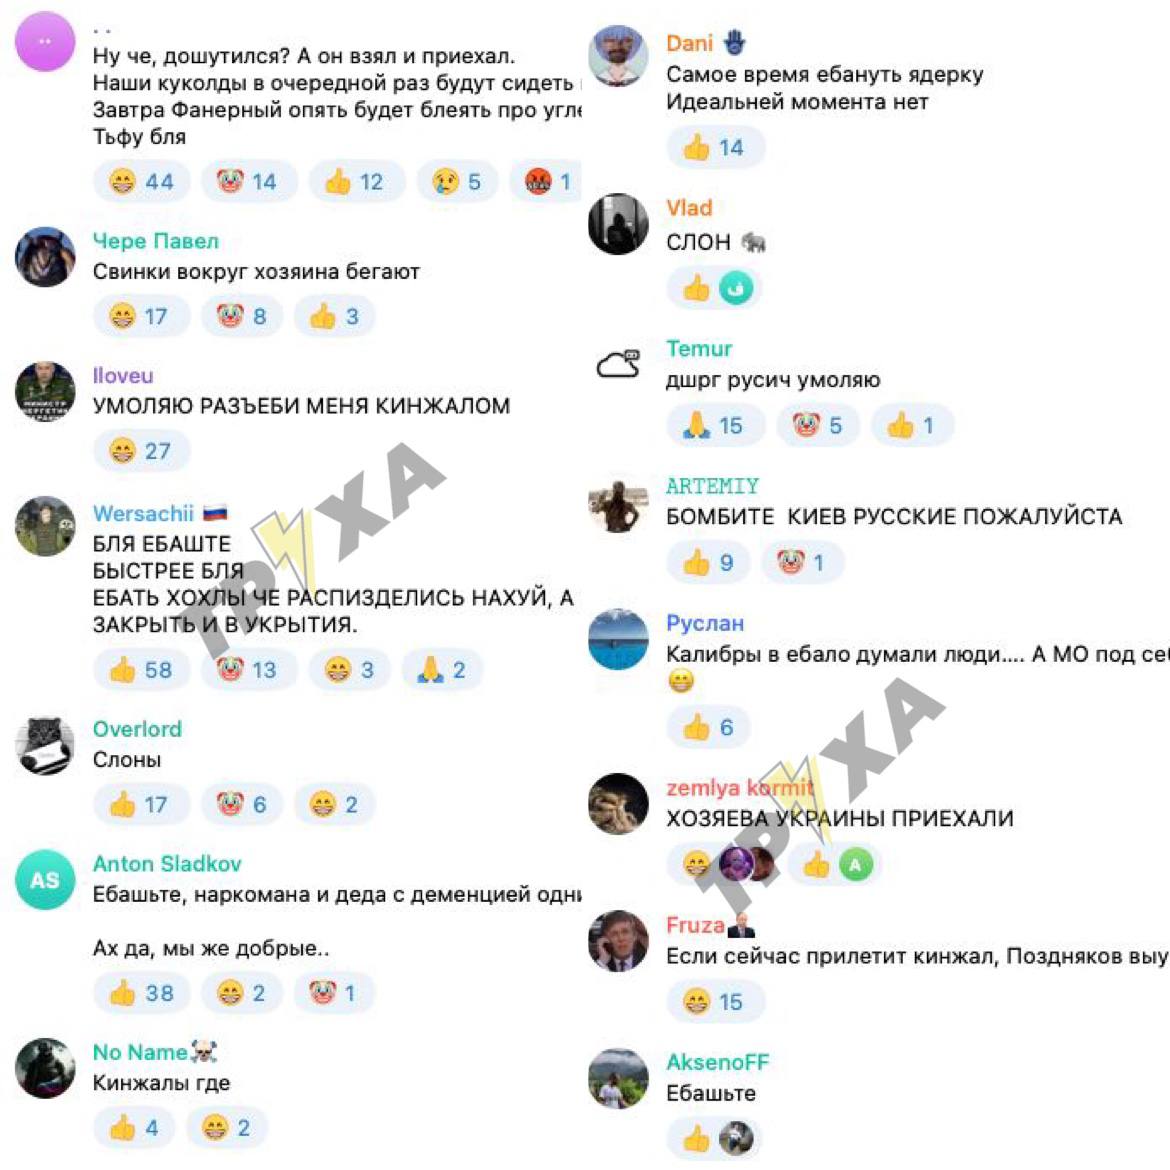 Труха телеграмм украина на русском языке смотреть онлайн бесплатно фото 17